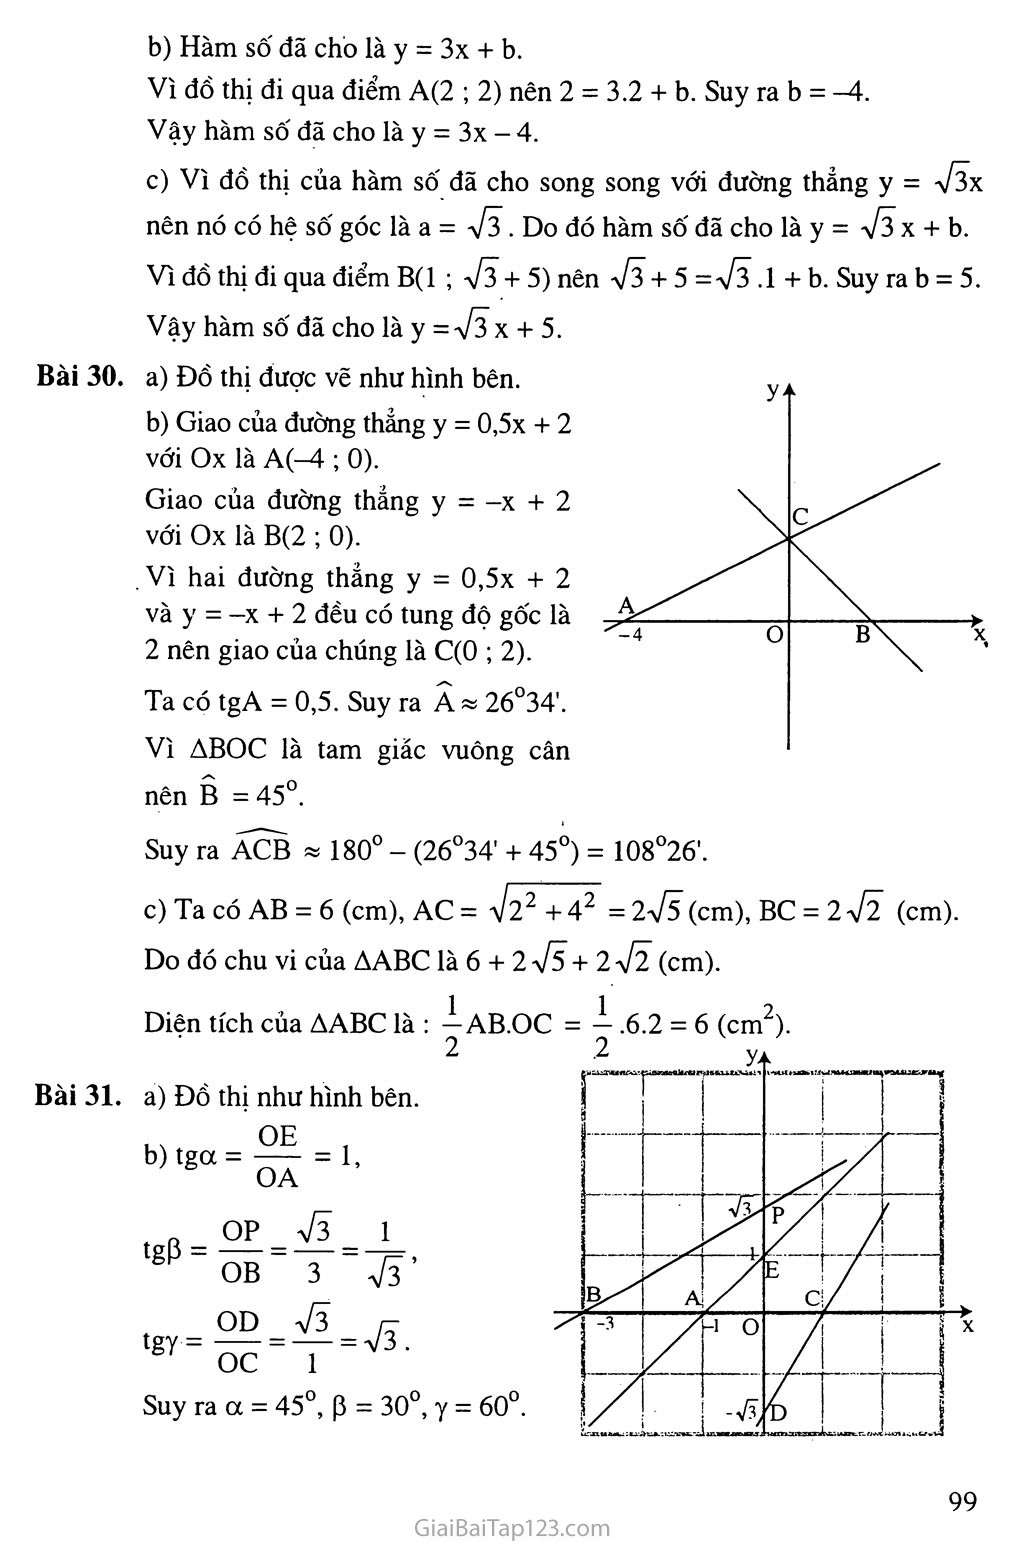 Bài 5. Hệ số góc của đường thẳng y = ax + b (a khác 0) trang 5